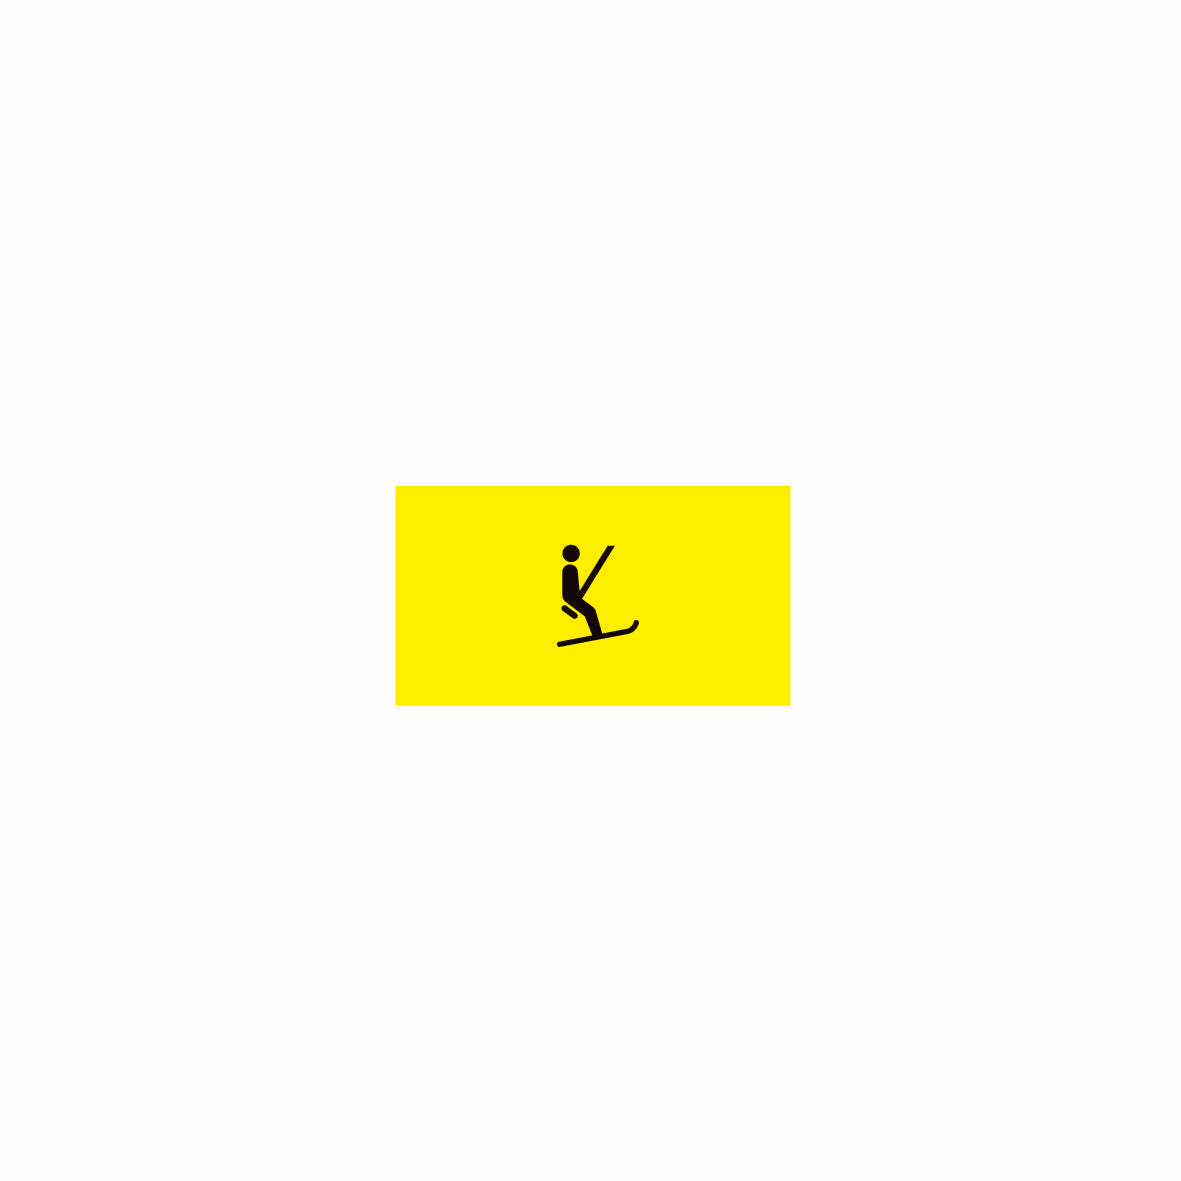 SKUS Gefahrensignal, 1.0014, fluoreszierend gelb, Logo Skilift, 40/20 cm, Alu Composite 3 mm